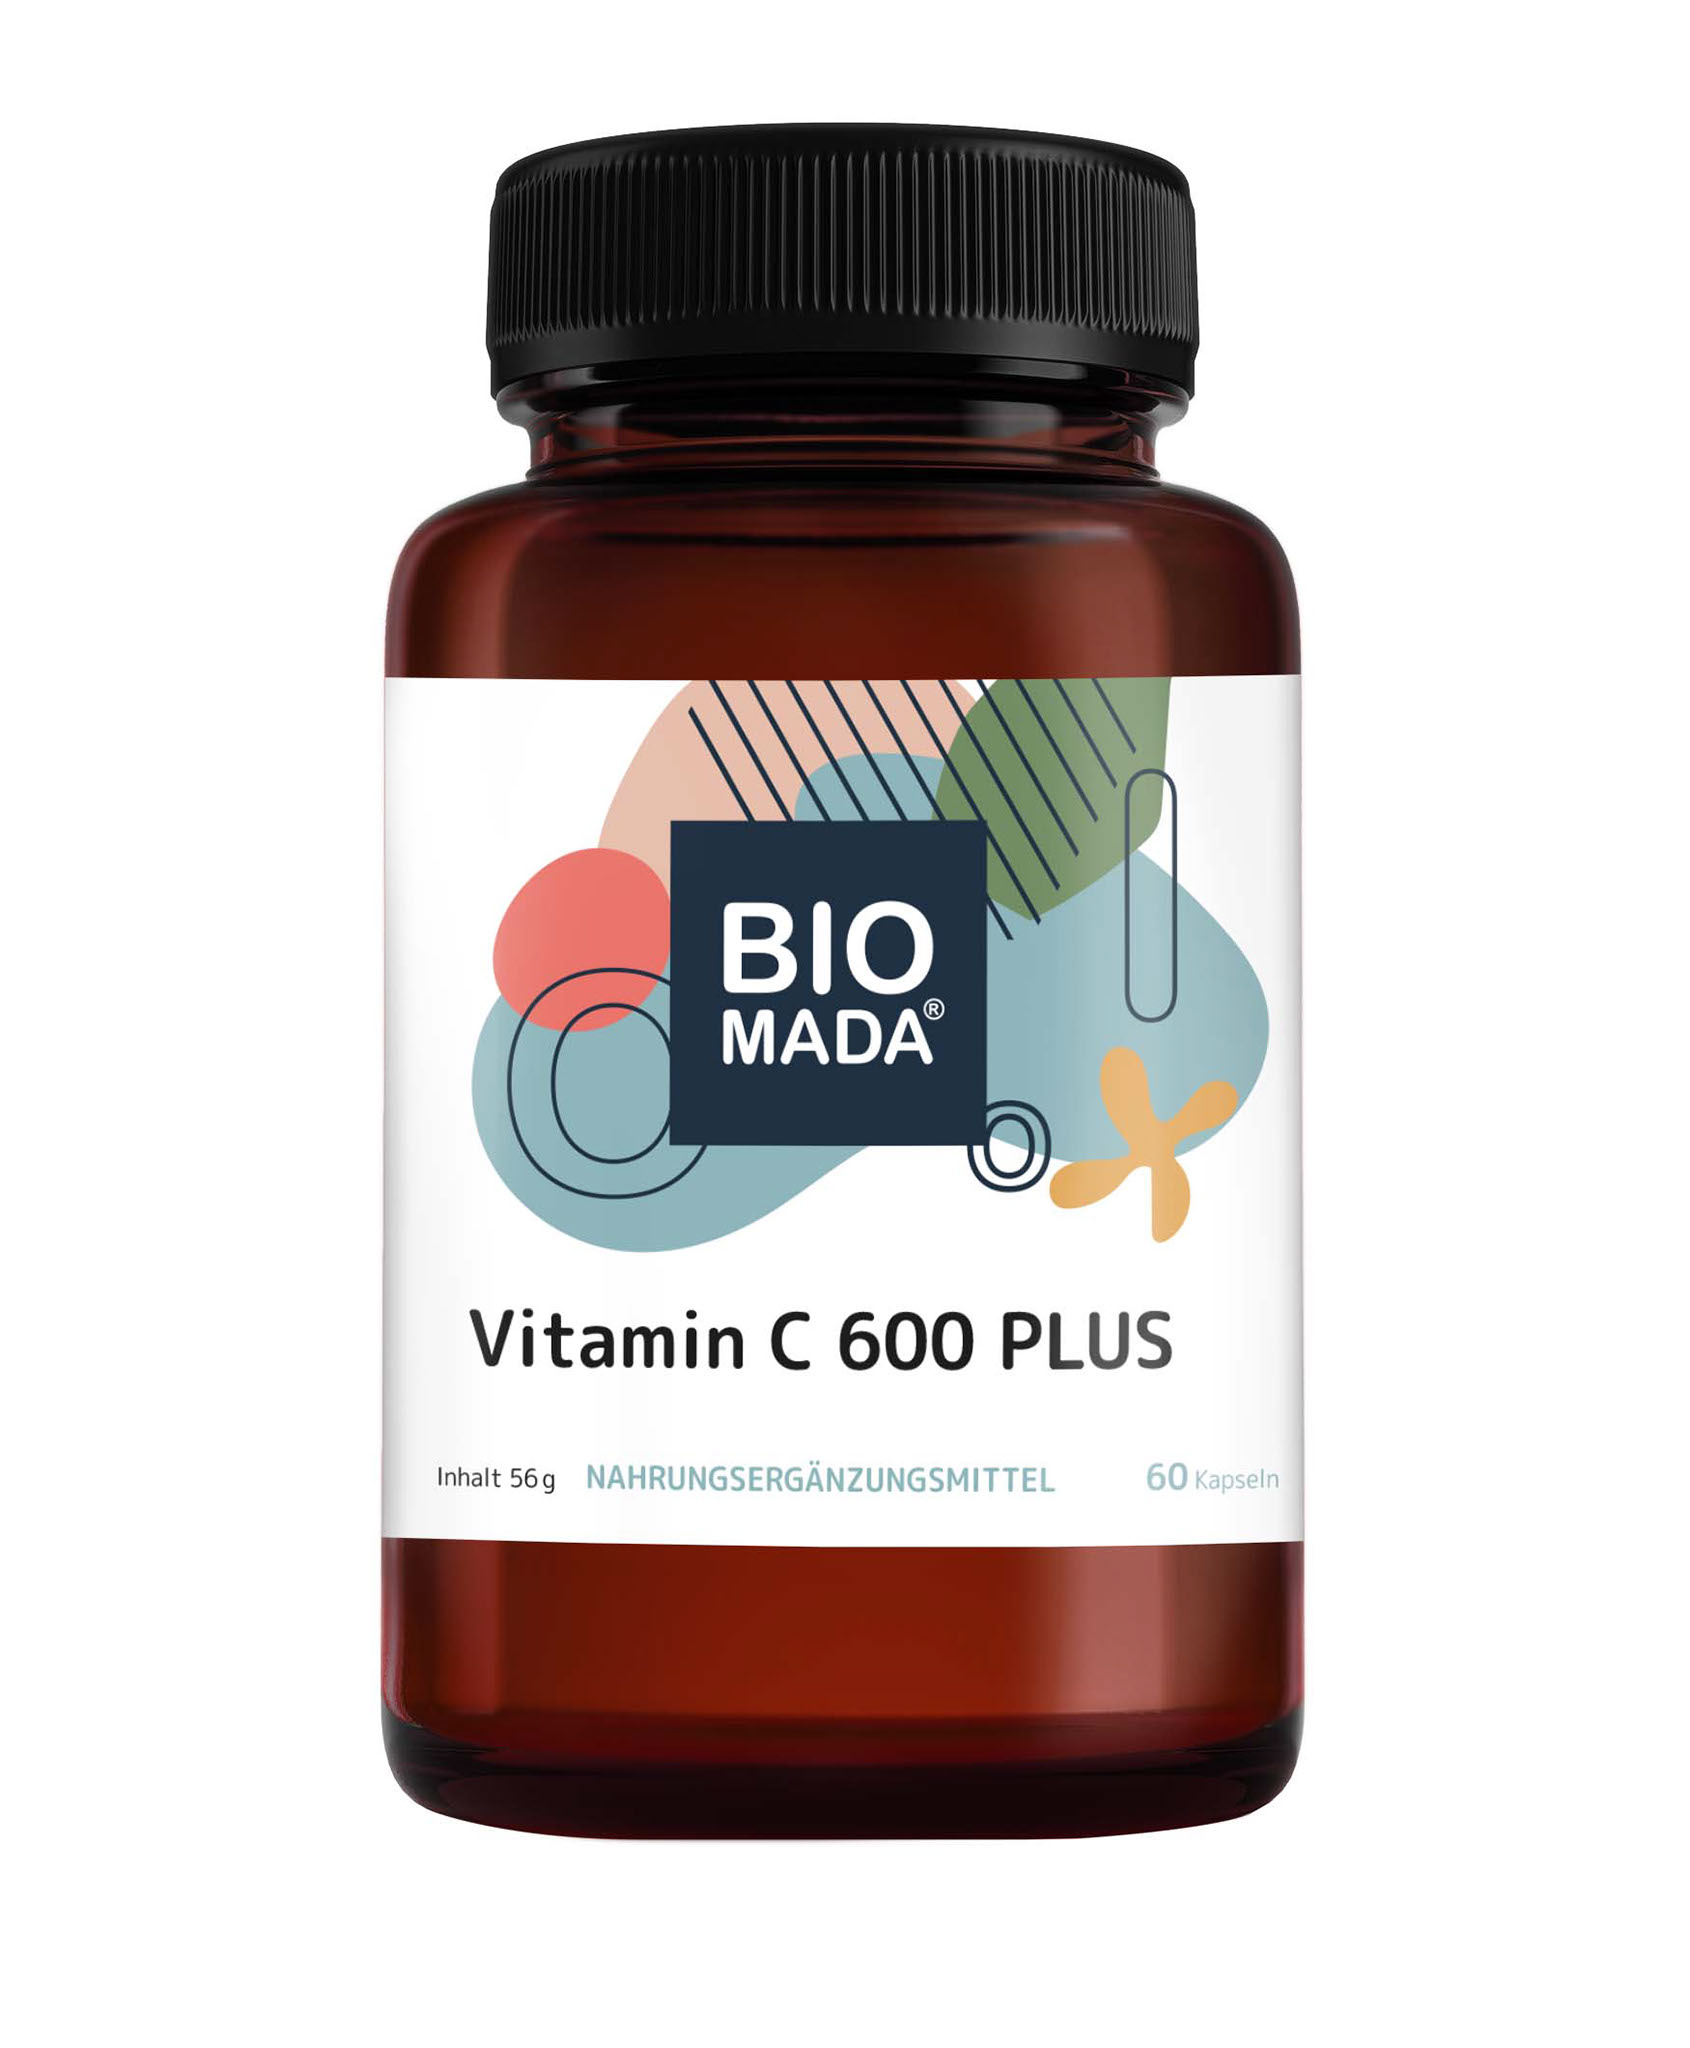 Vitamin C 600 PLUS